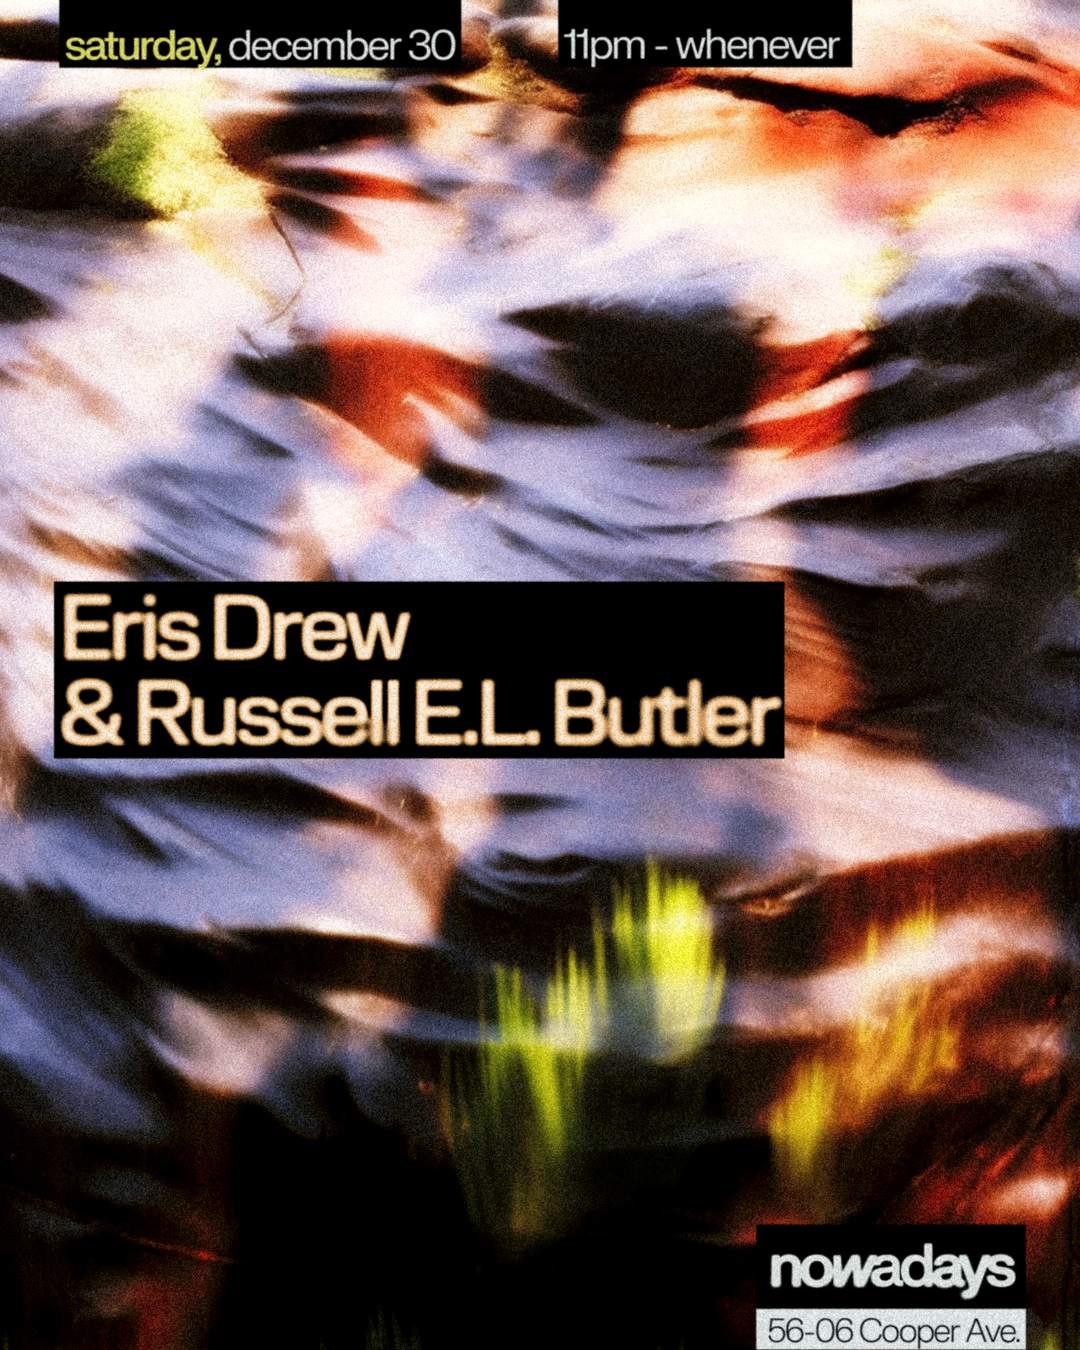 Eris Drew & Russell E.L. Butler - フライヤー表